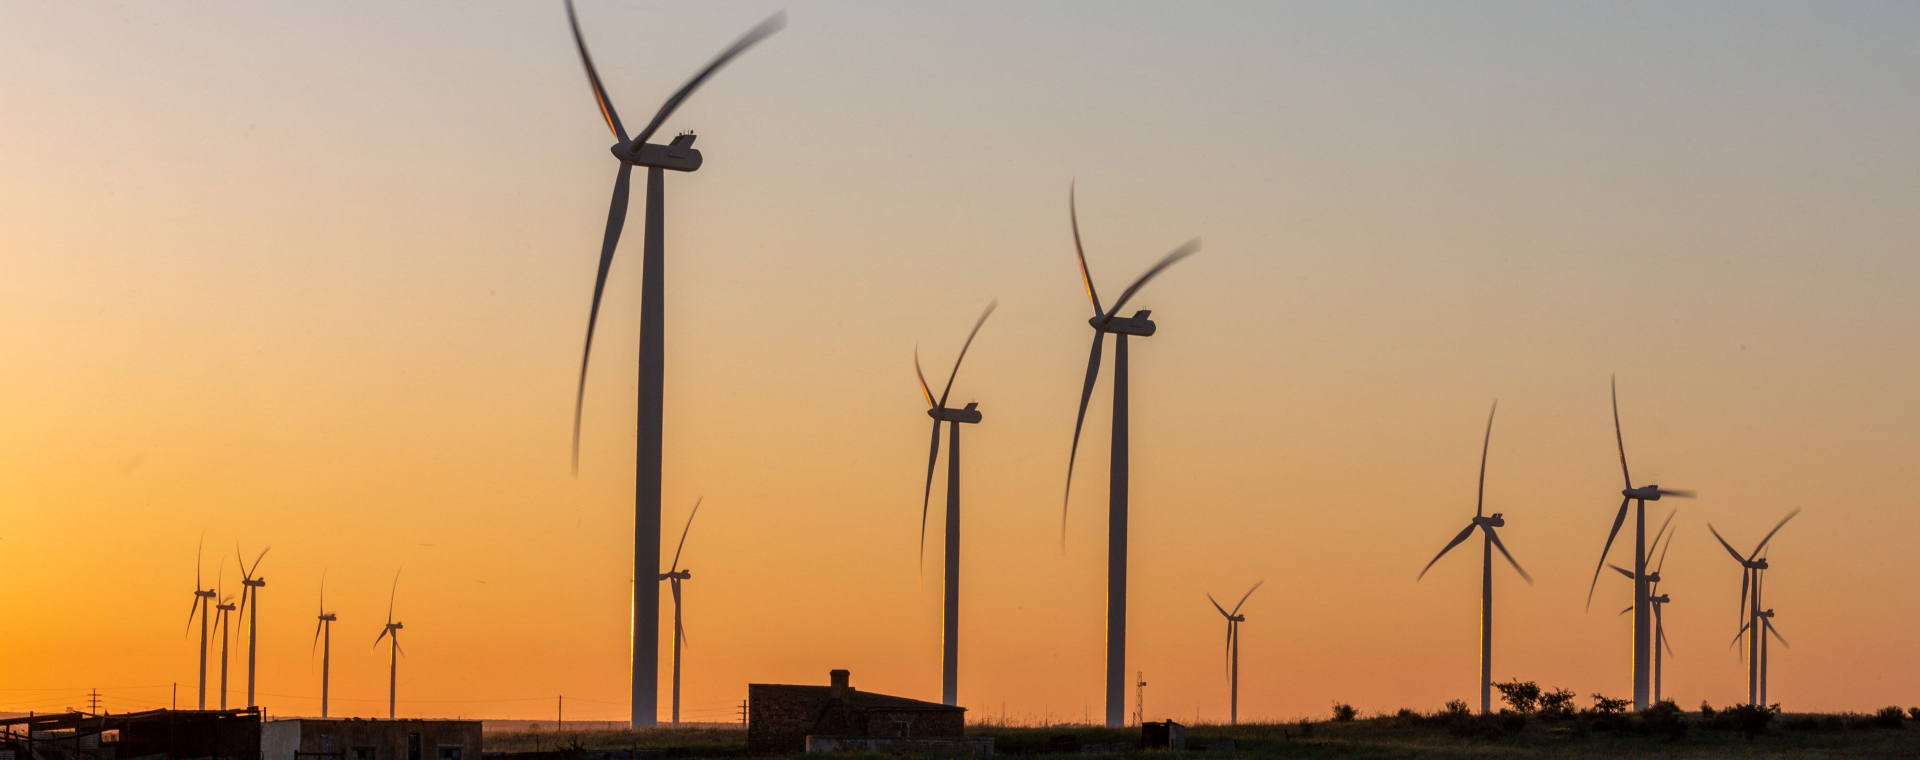 Turbin angin untuk pembangkit listrik tenaga angin di Afrika Selatan. - Bloomberg/Dwayne Senior